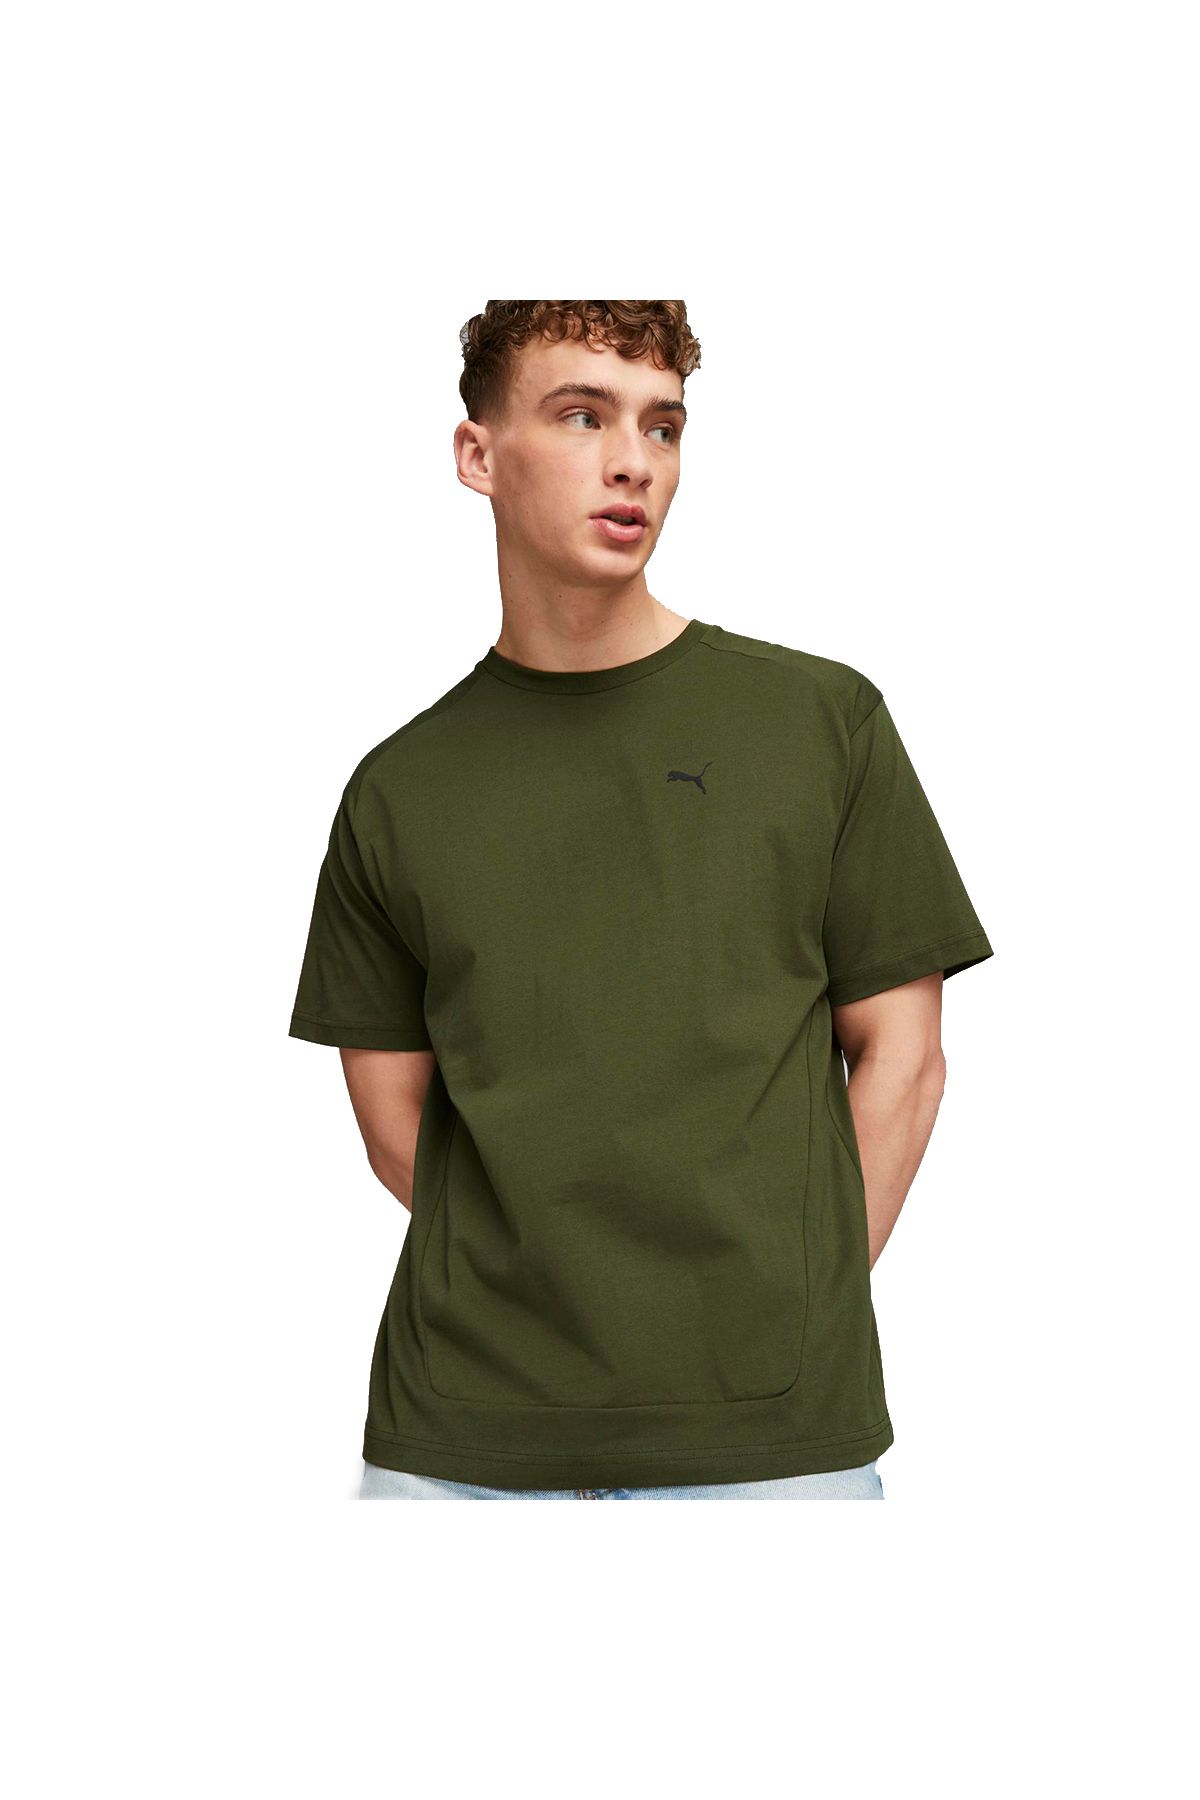 Puma Rad/Cal Erkek Yeşil Günlük Stil T-Shirt 67588631